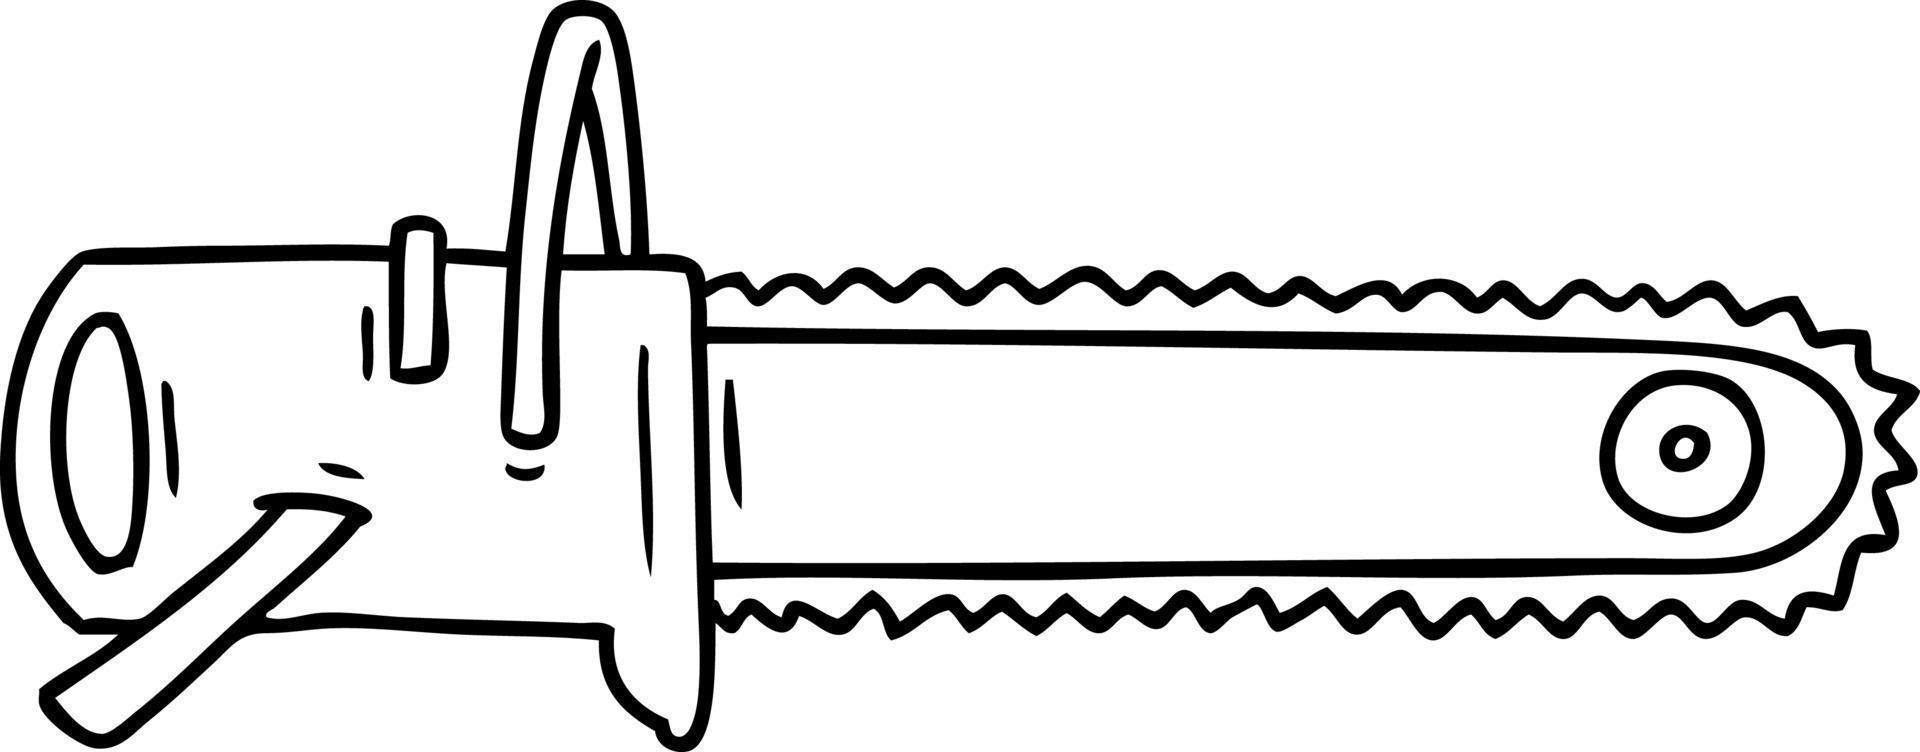 doodle de desenho de linha para uma motosserra 10240026 Vetor no Vecteezy